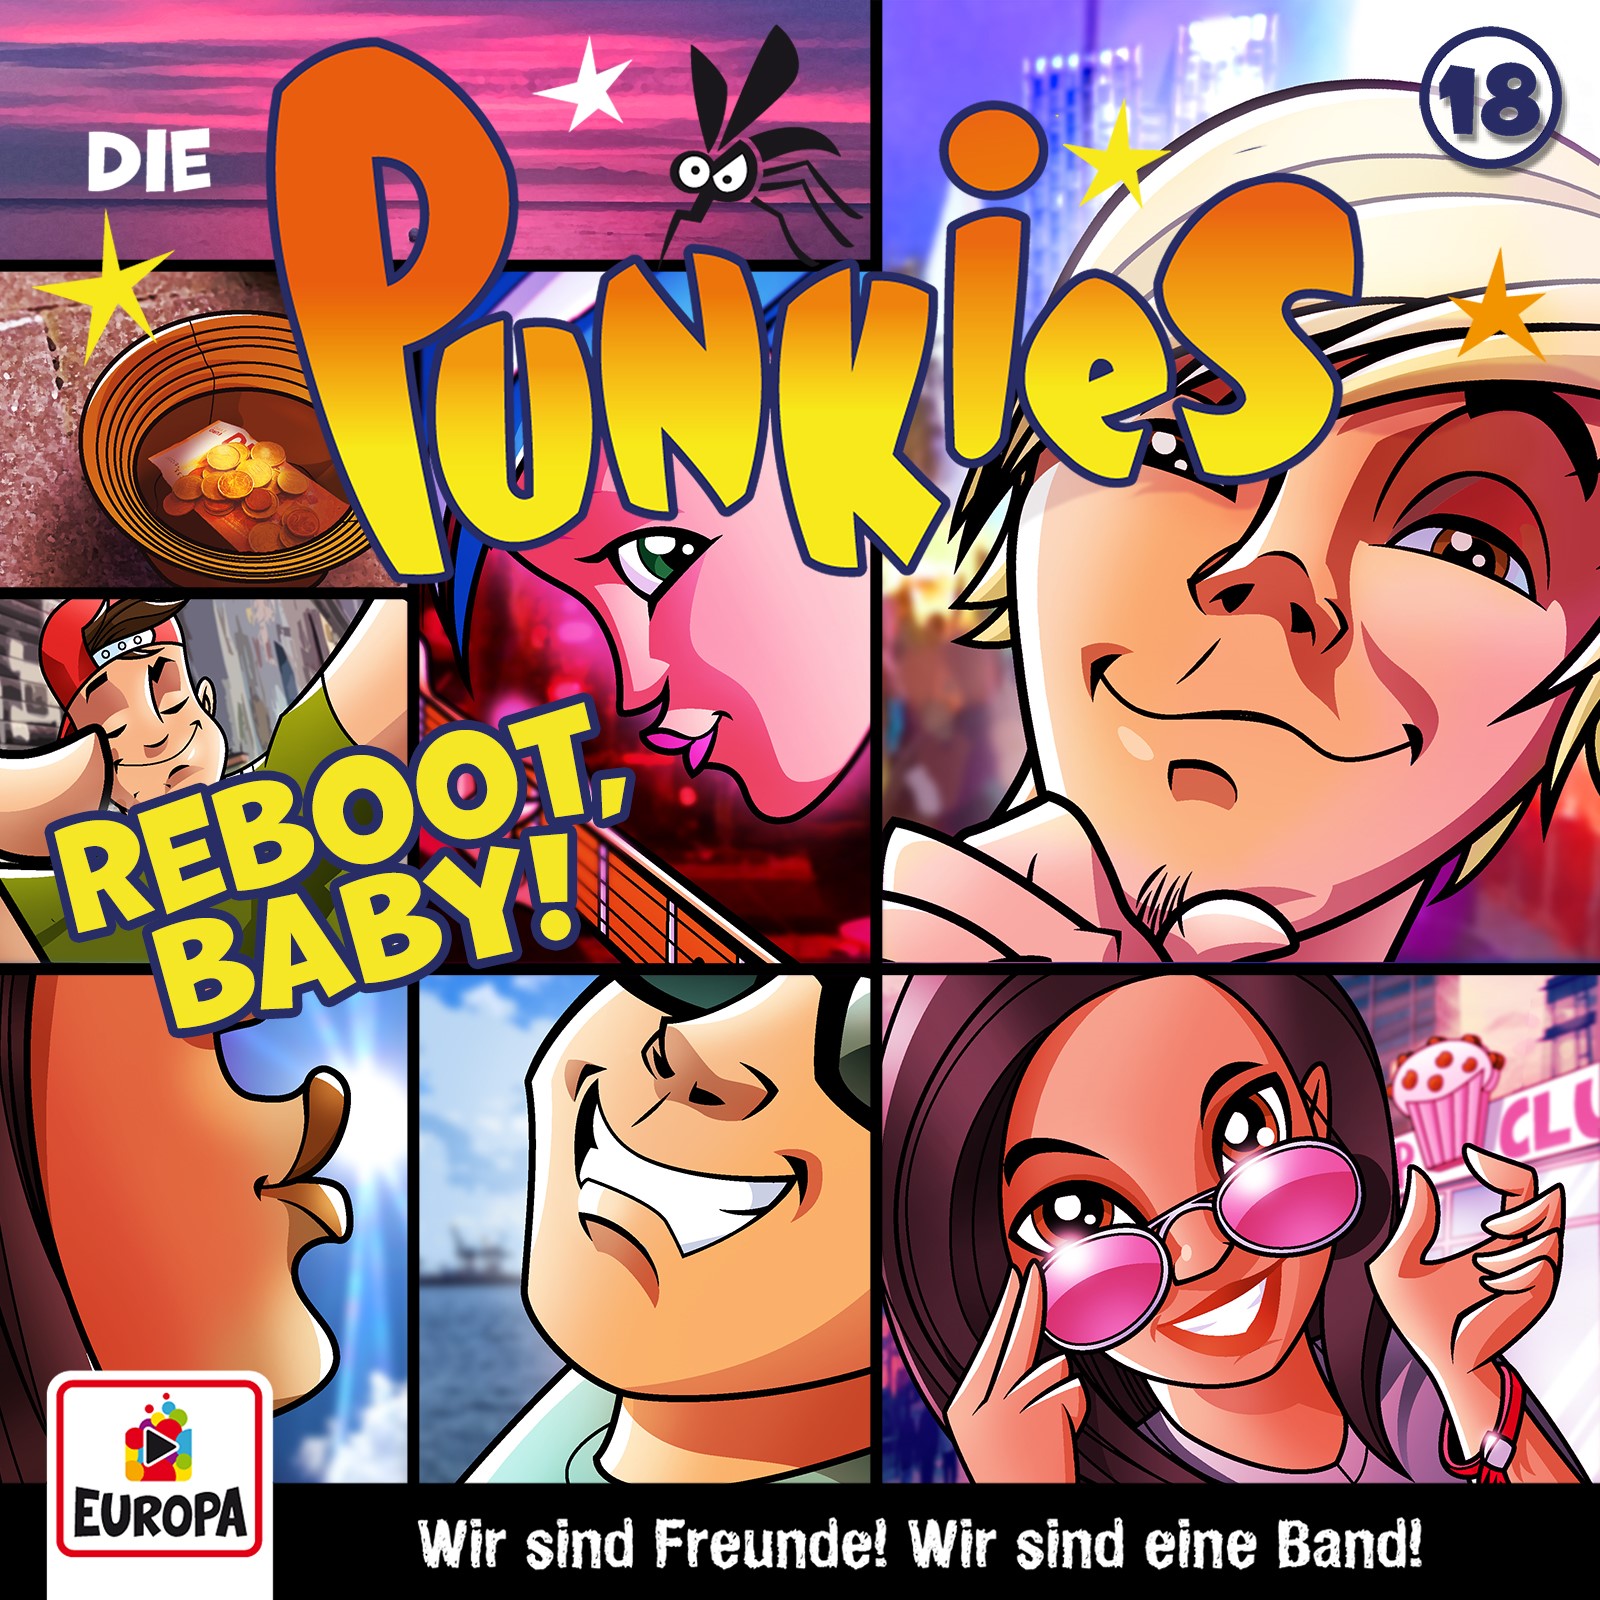 Die Punkies : Reboot, Baby!